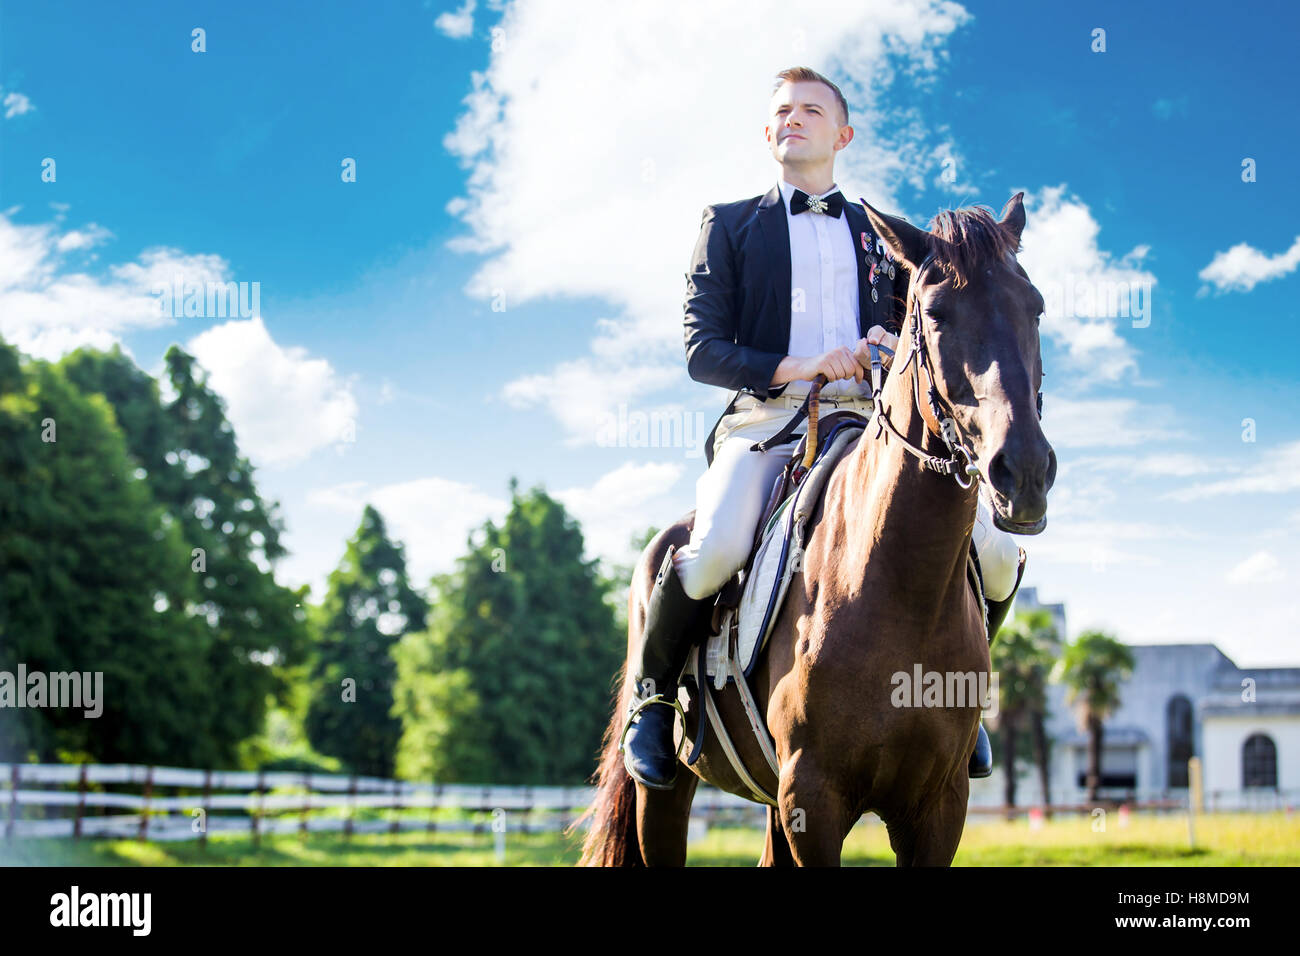 Bien réfléchie habillé homme assis sur le cheval contre ciel nuageux Banque D'Images